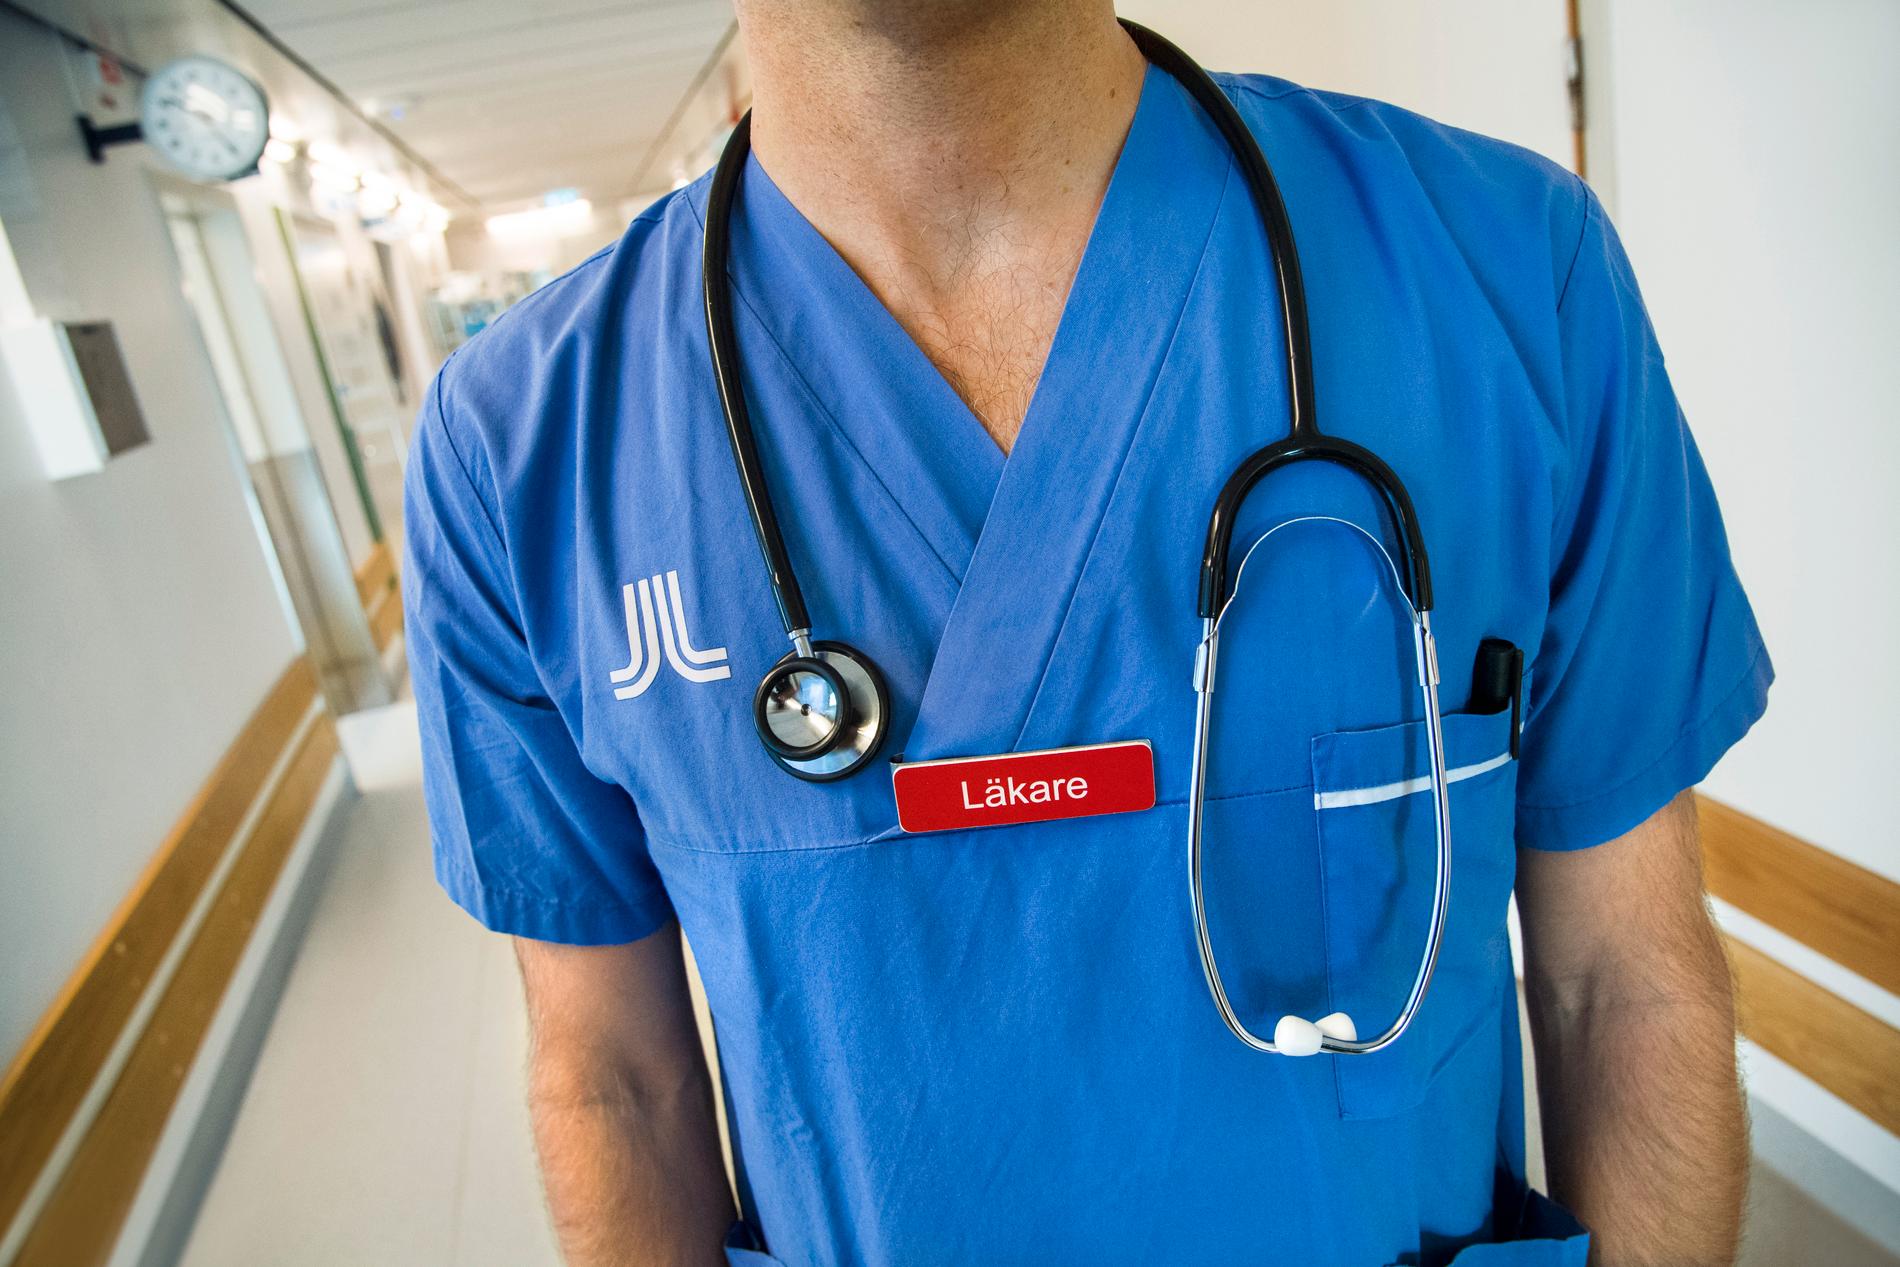 Sex av tio av primärvårdens patienter saknar en fast läkare.